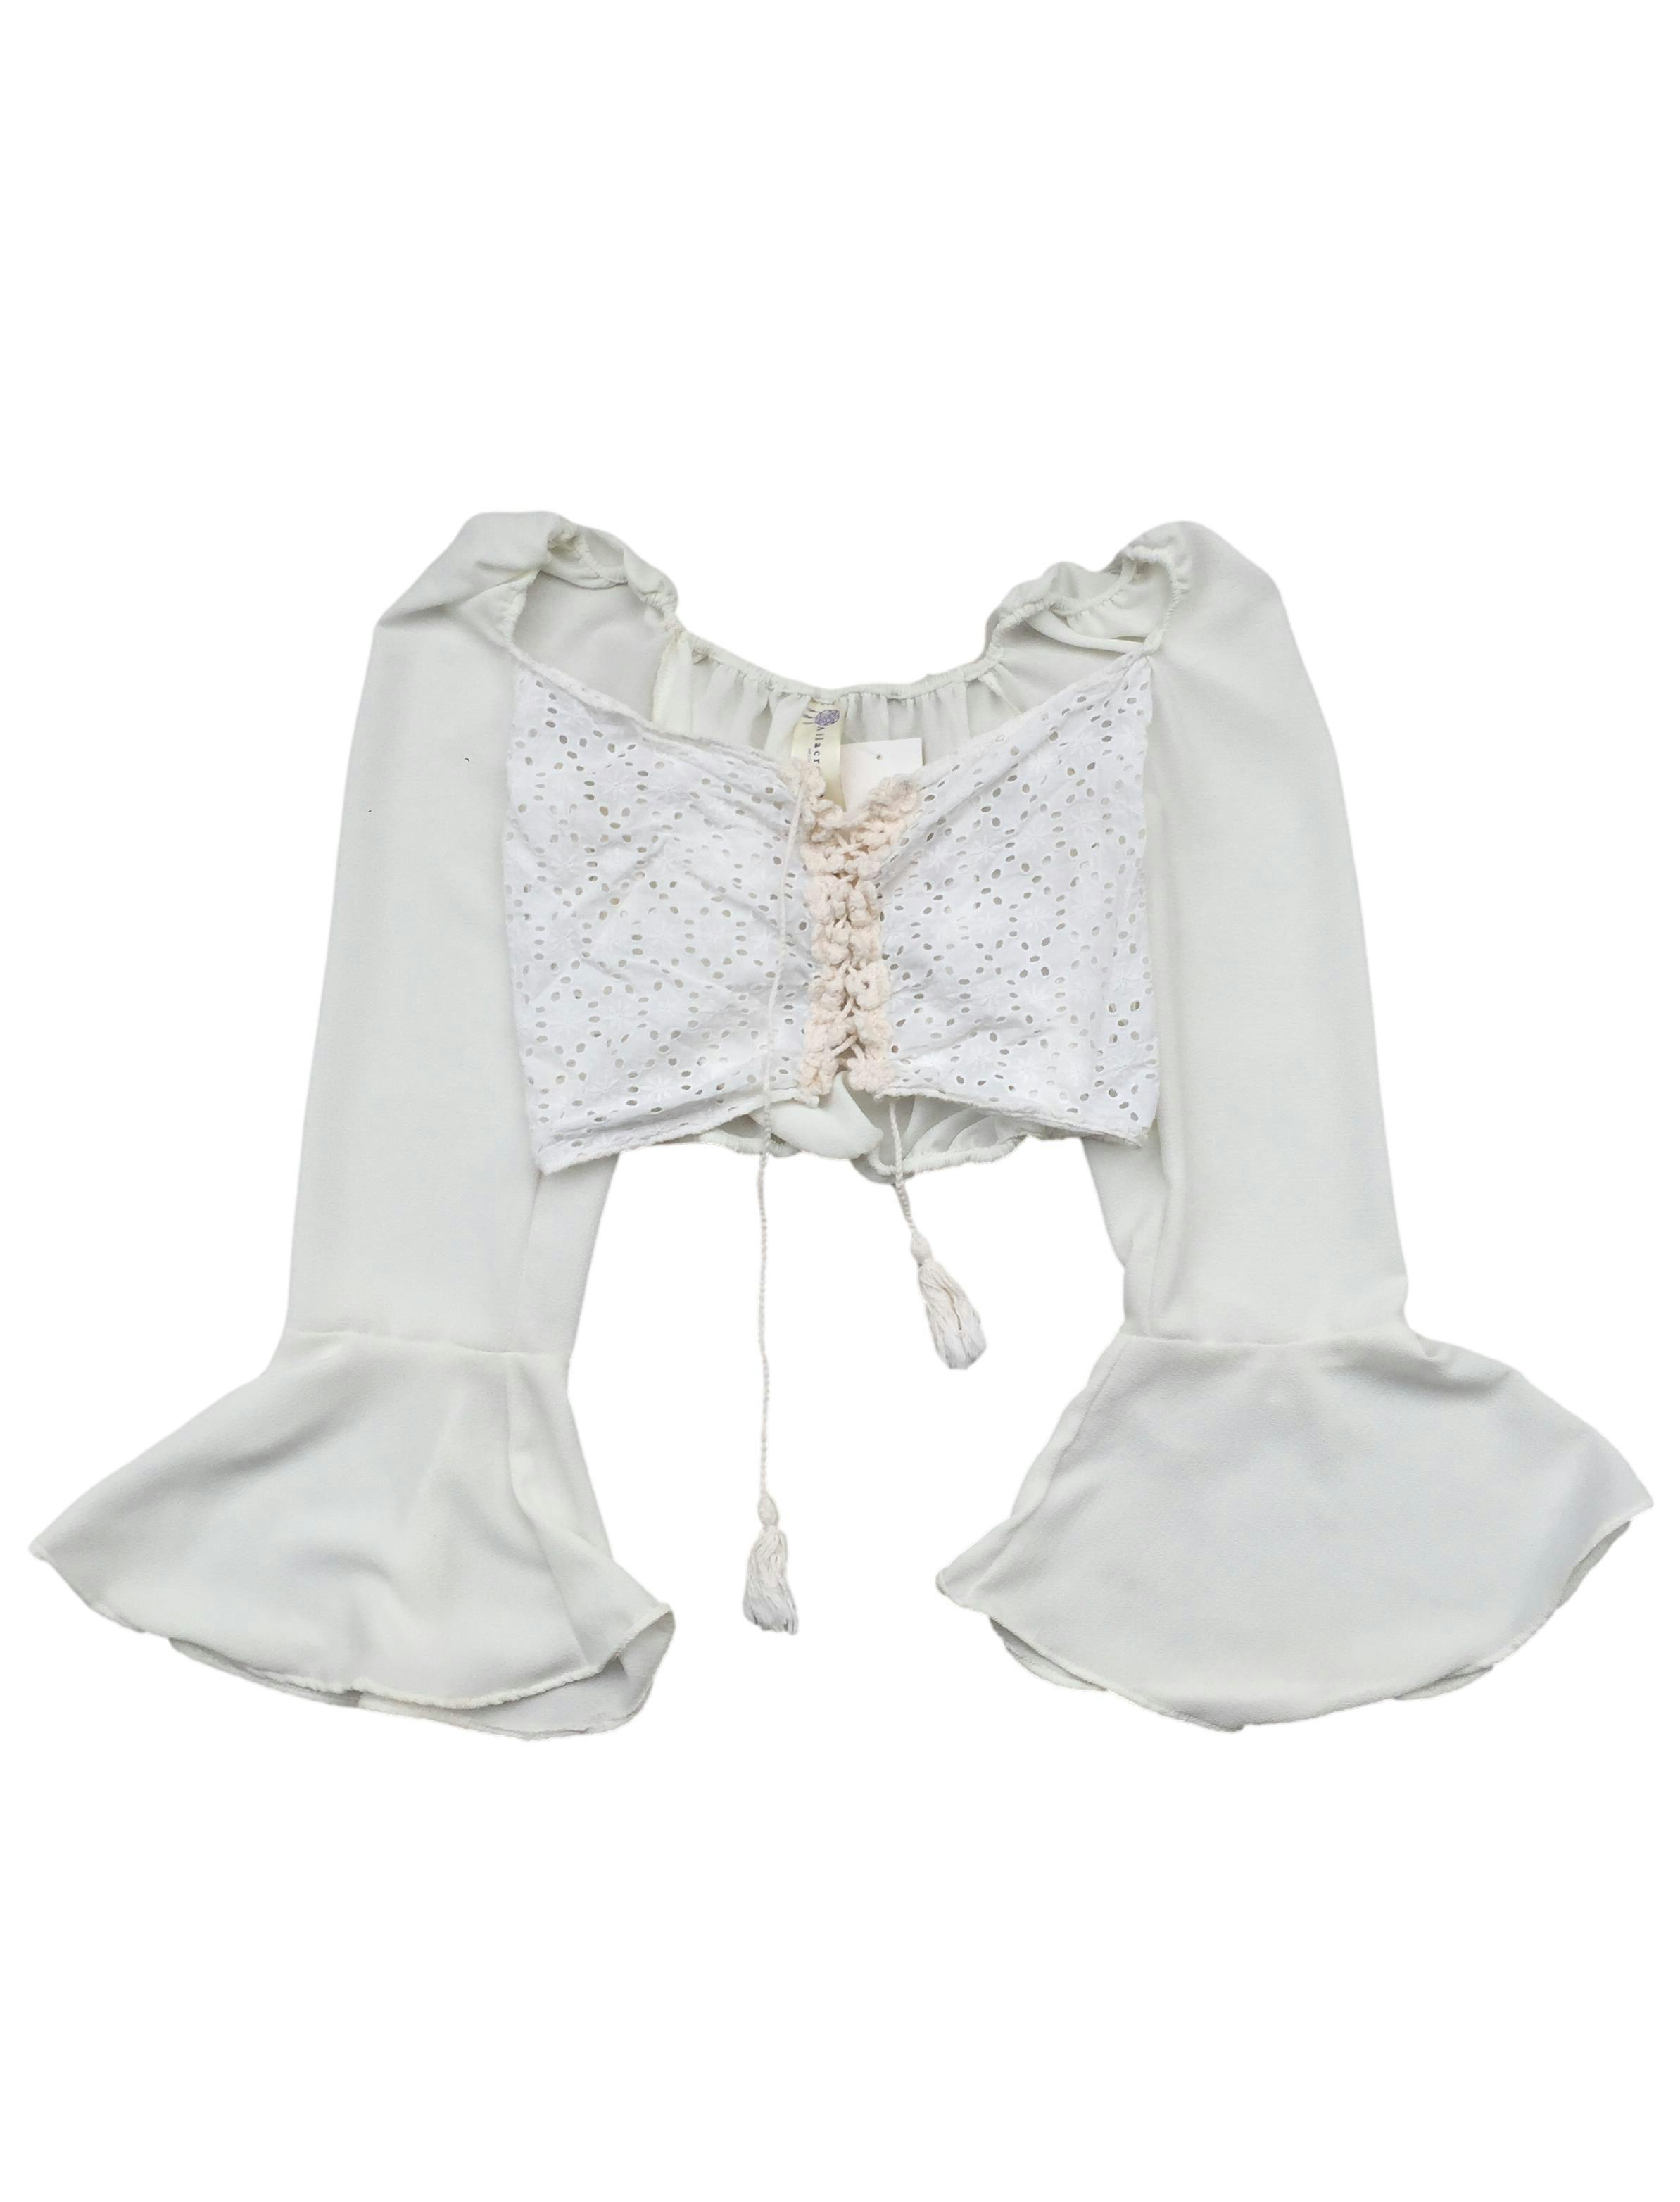 Blusa blanca calado delantero con detalles de flores tejidas con cordones, volantes en las mangas. Busto: 80cm, Largo: 35cm